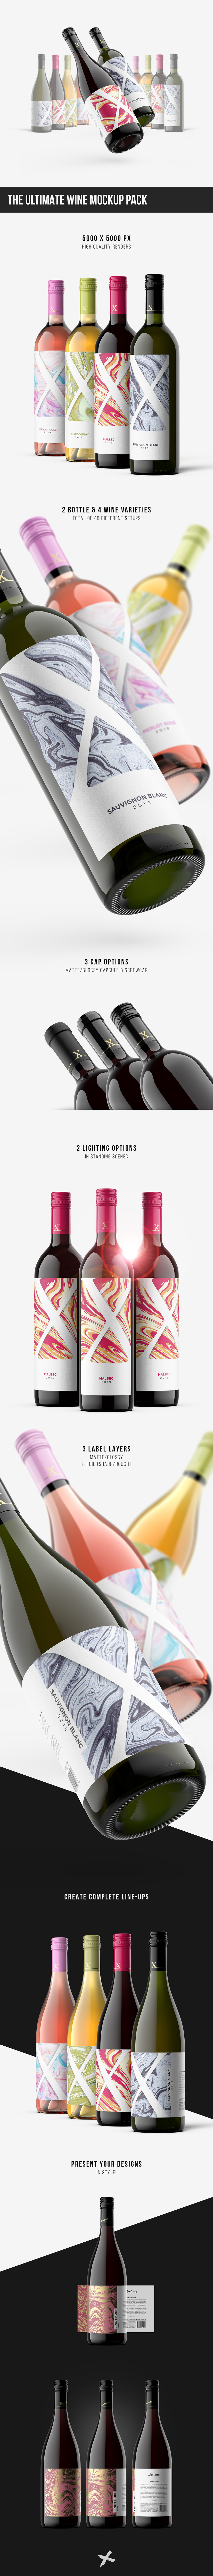 wine Mockup Bordeaux burgundy Label bottle graphic design  Packaging 3D Render